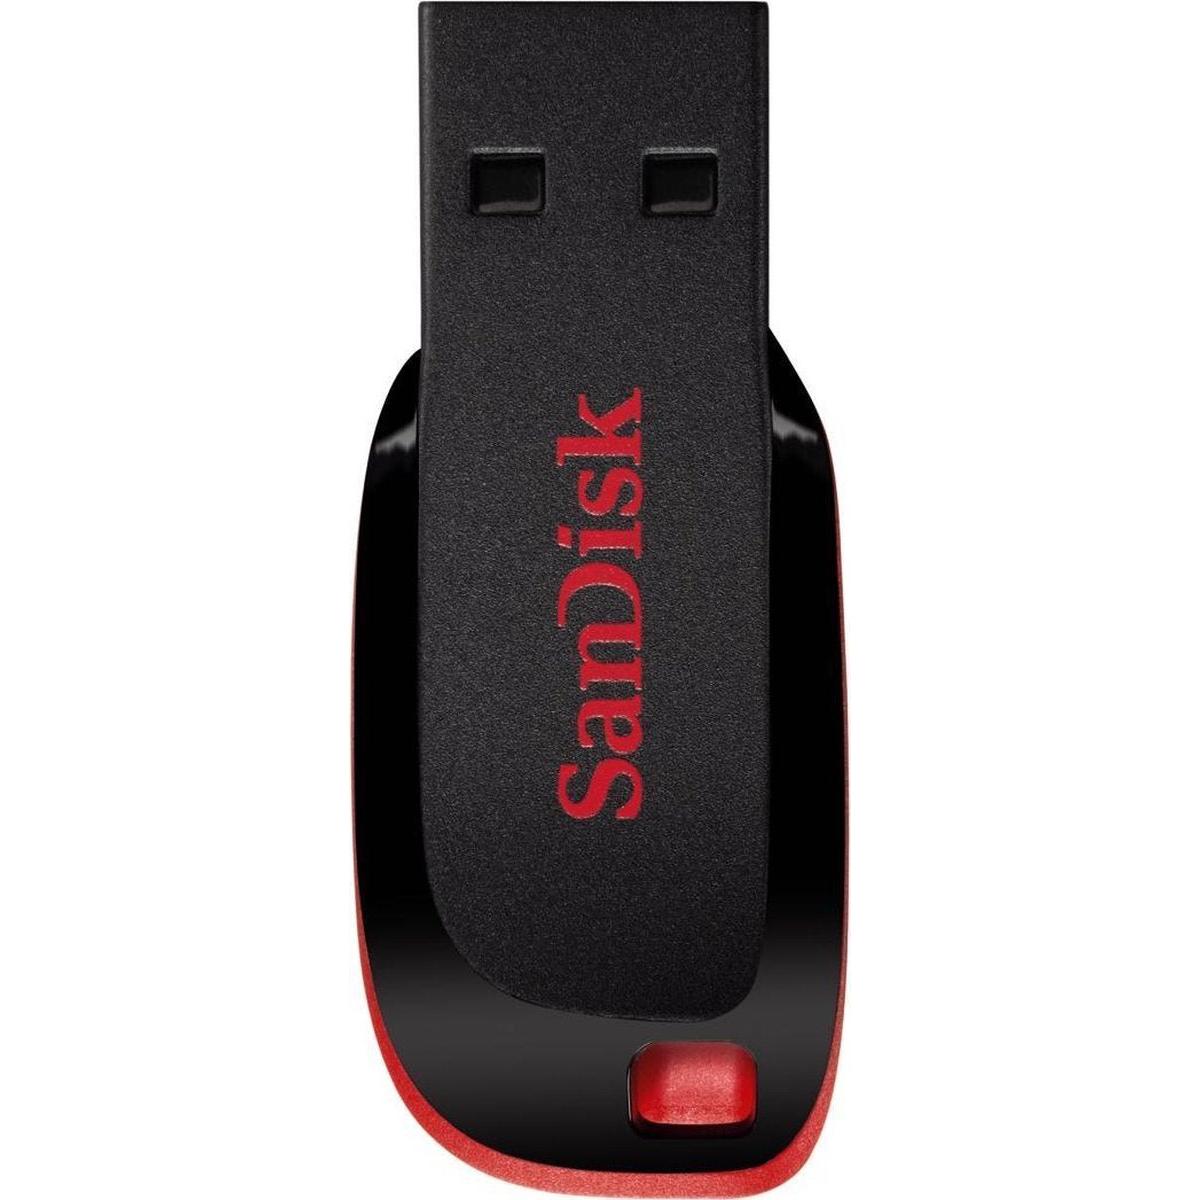 Sandisk Cruzer Blade USB stick - 16GB - USB 2.0 A - USB Drive - NLMAX